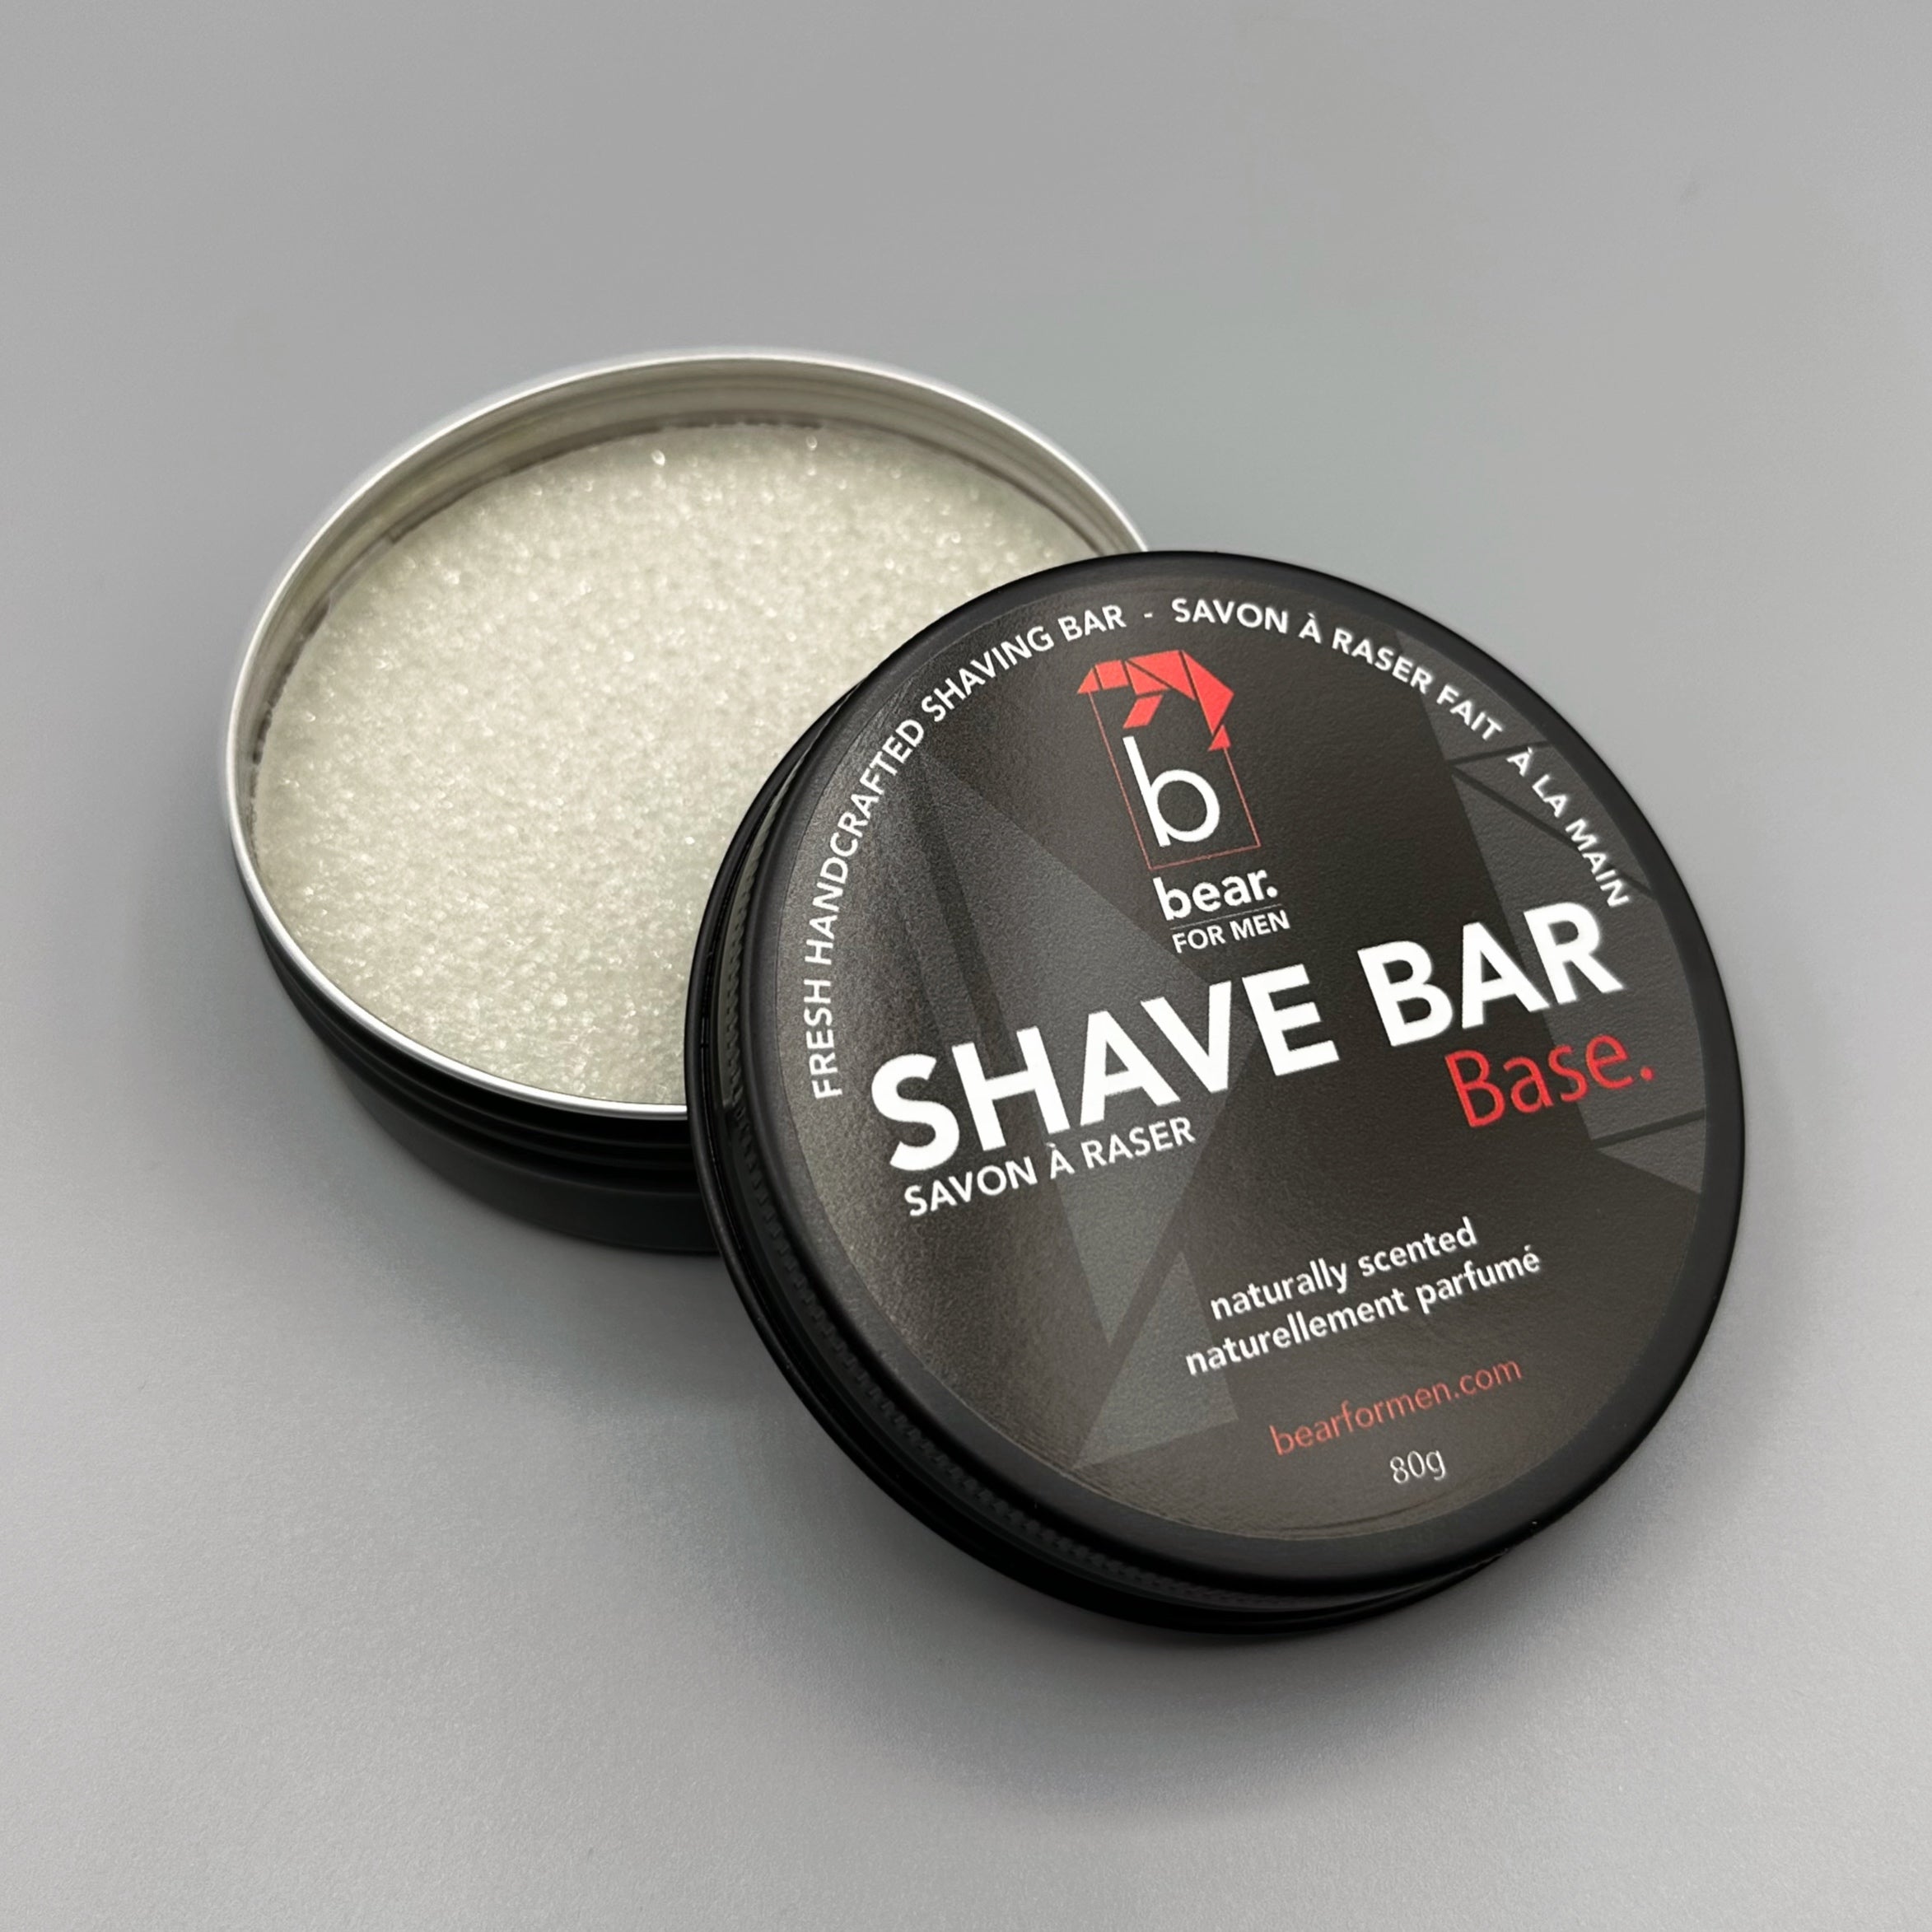 Shave Bar